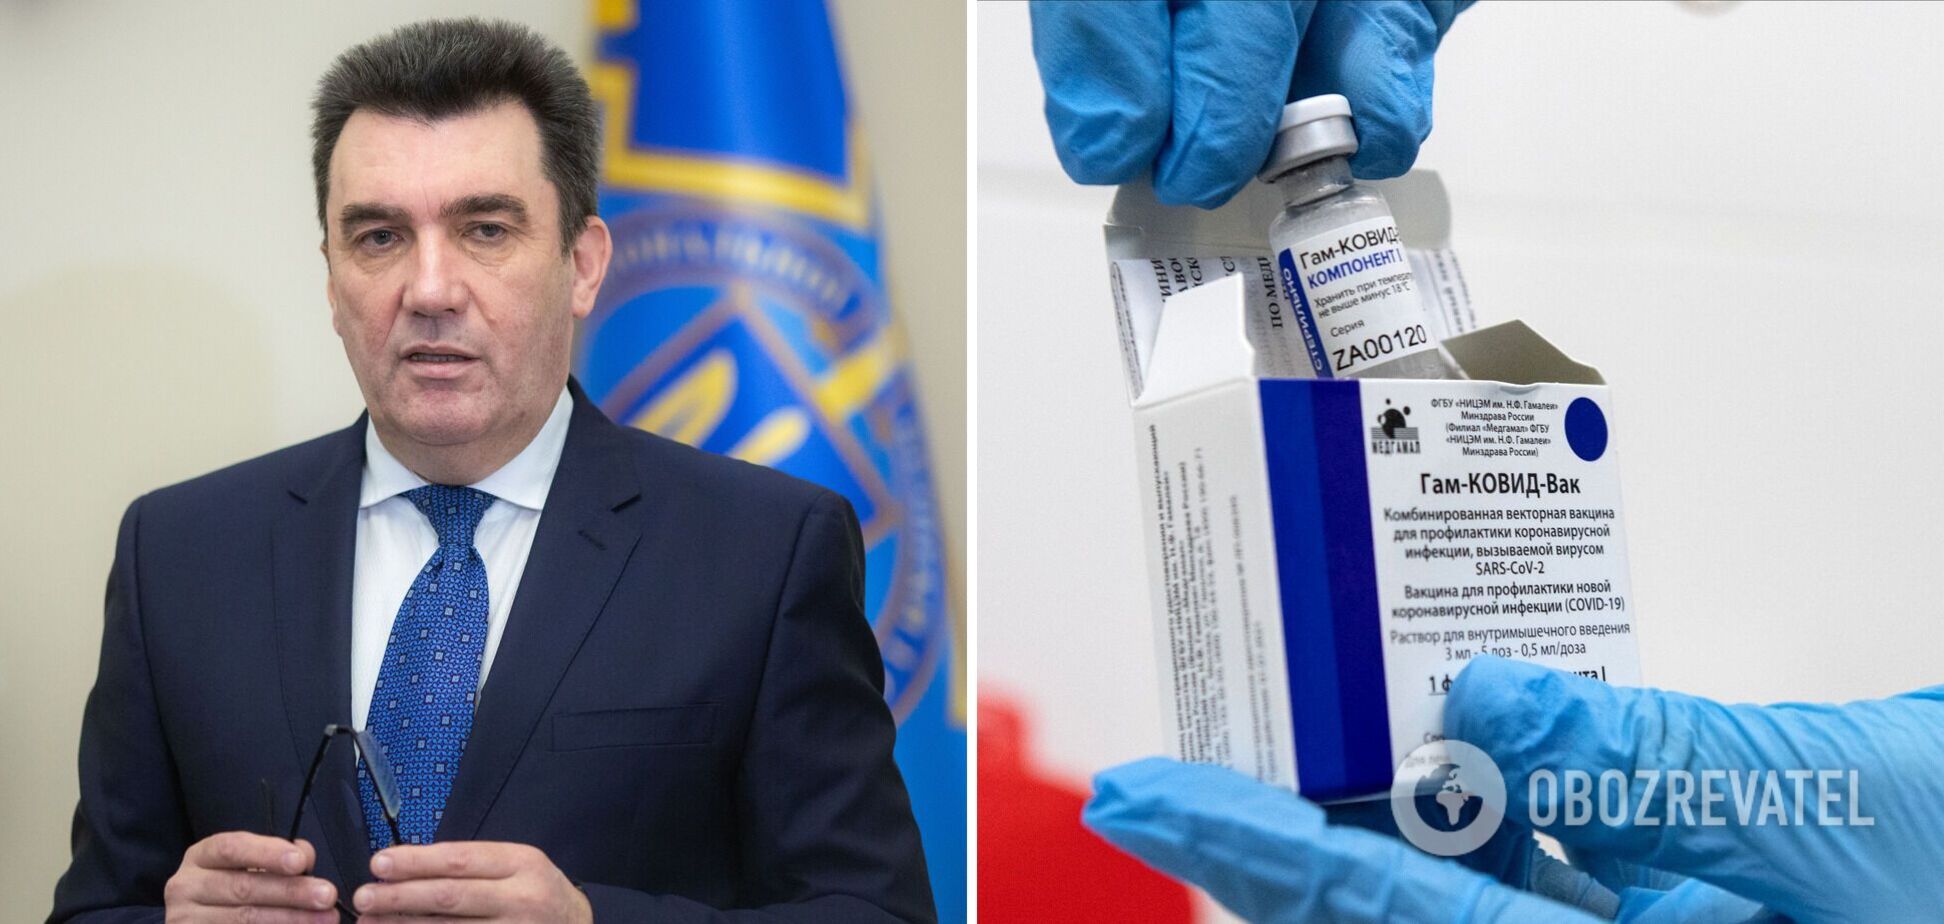 Данілов висловився про російську вакцину 'Супутник V'